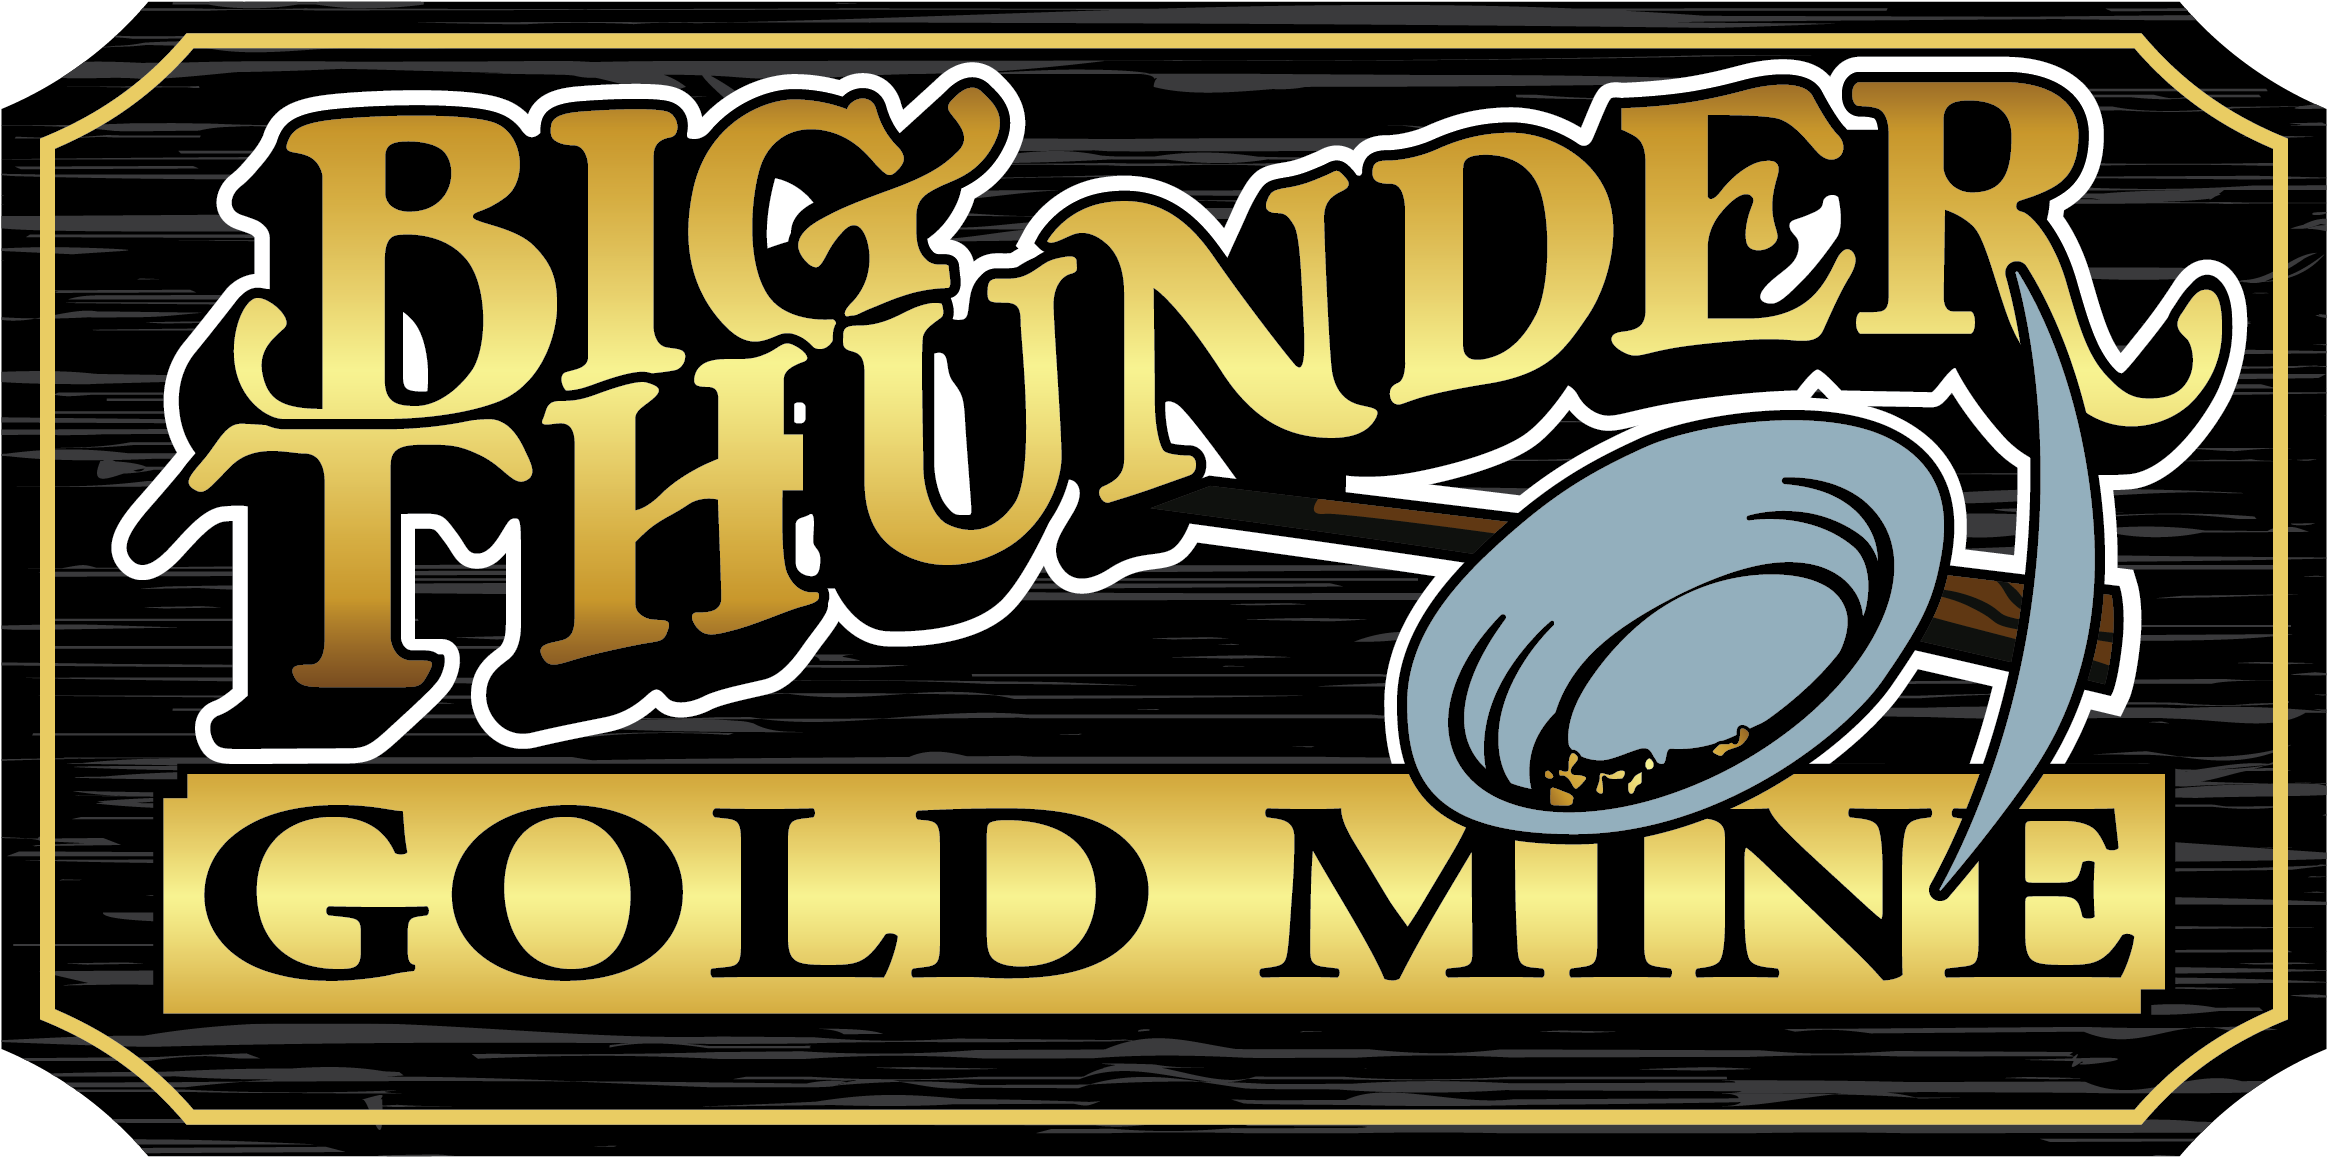 Big Thunder Gold Mine Sign PNG image